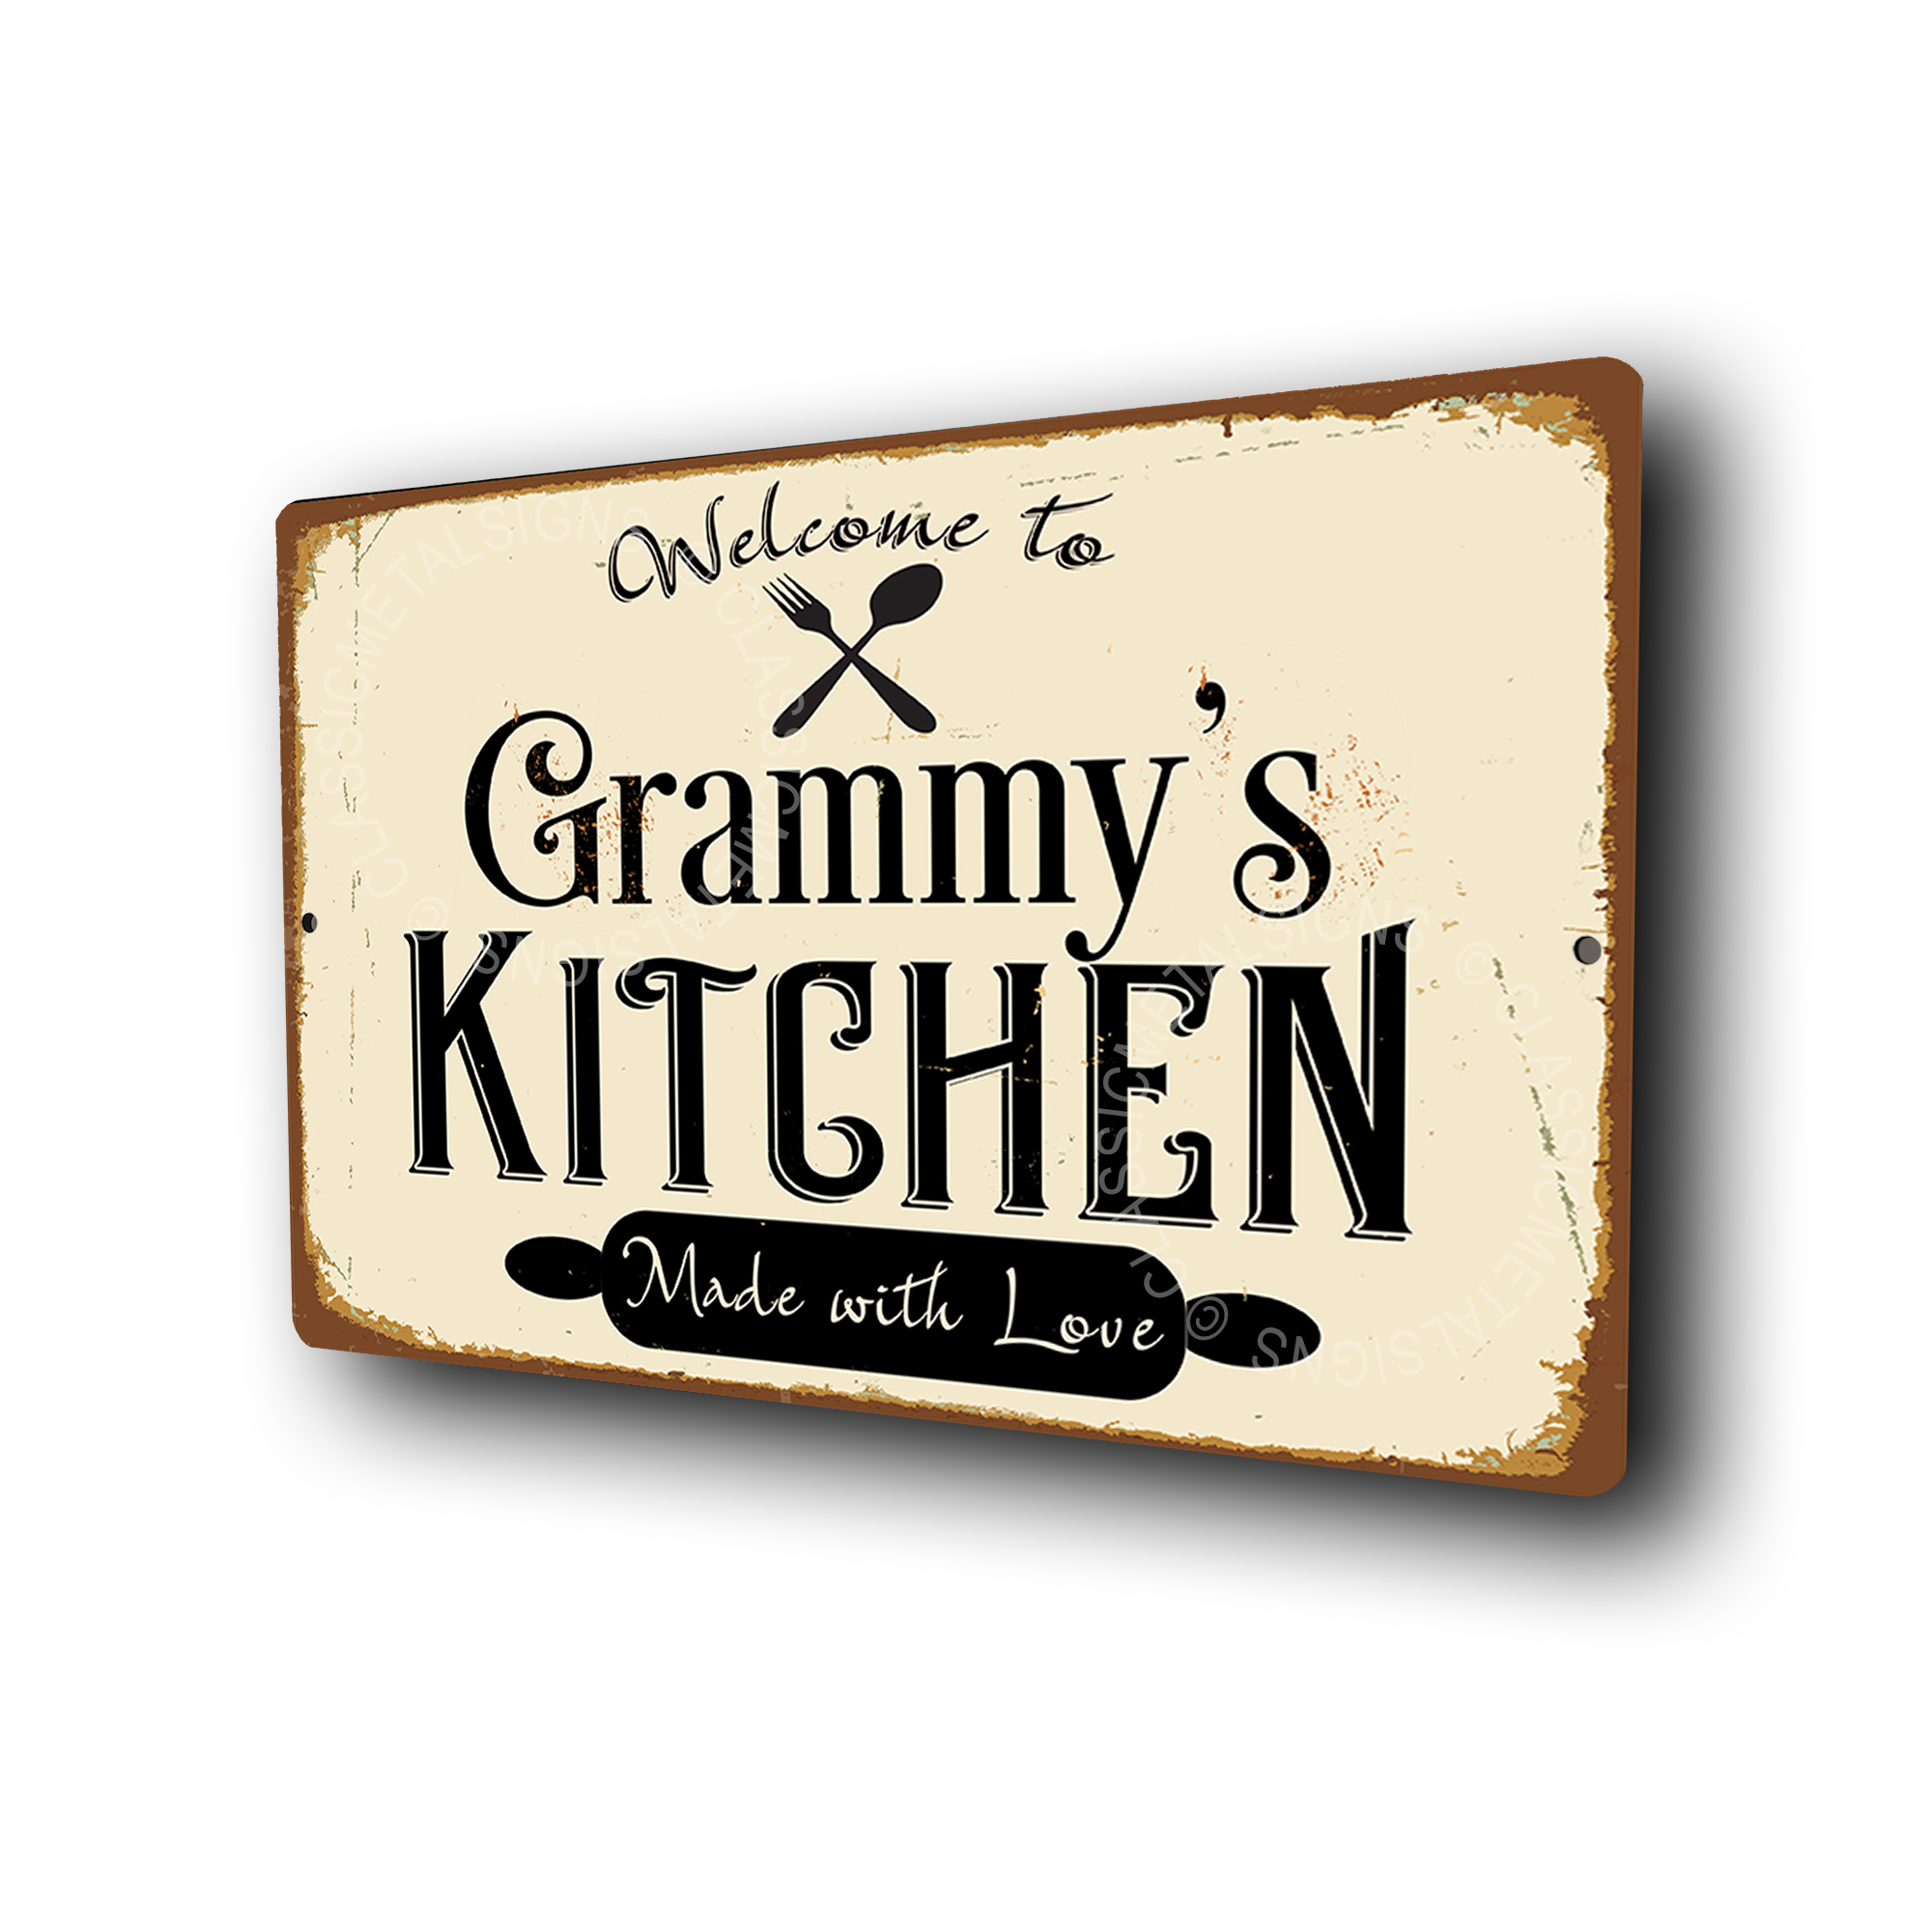 Grammy's Kitchen Signs